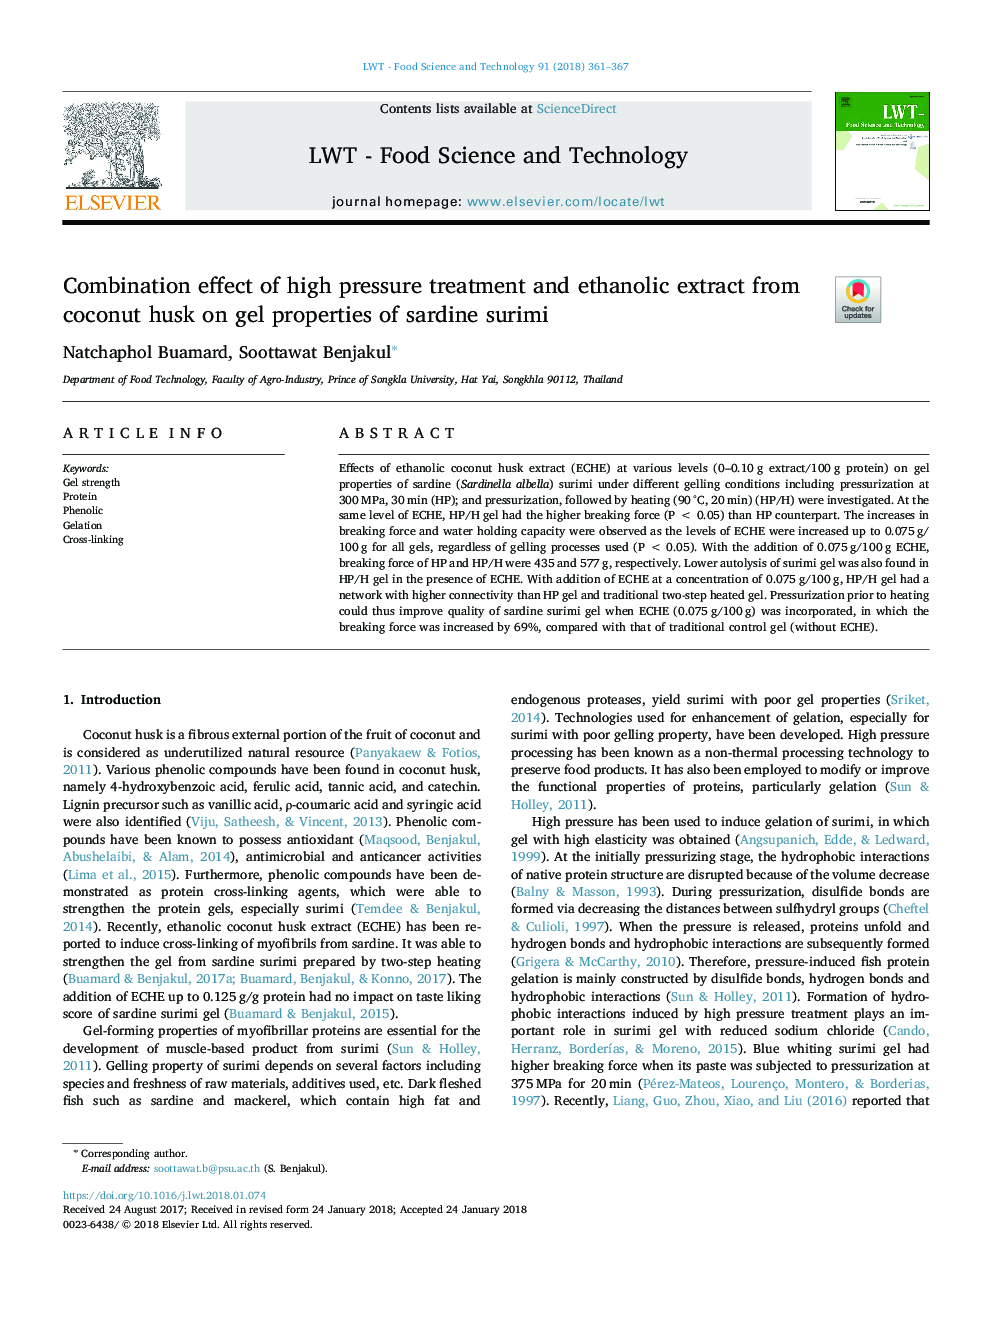 اثر ترکیبی از درمان فشار بالا و عصاره اتانولی از پوسته نارگیل بر خواص ژل ساردین 